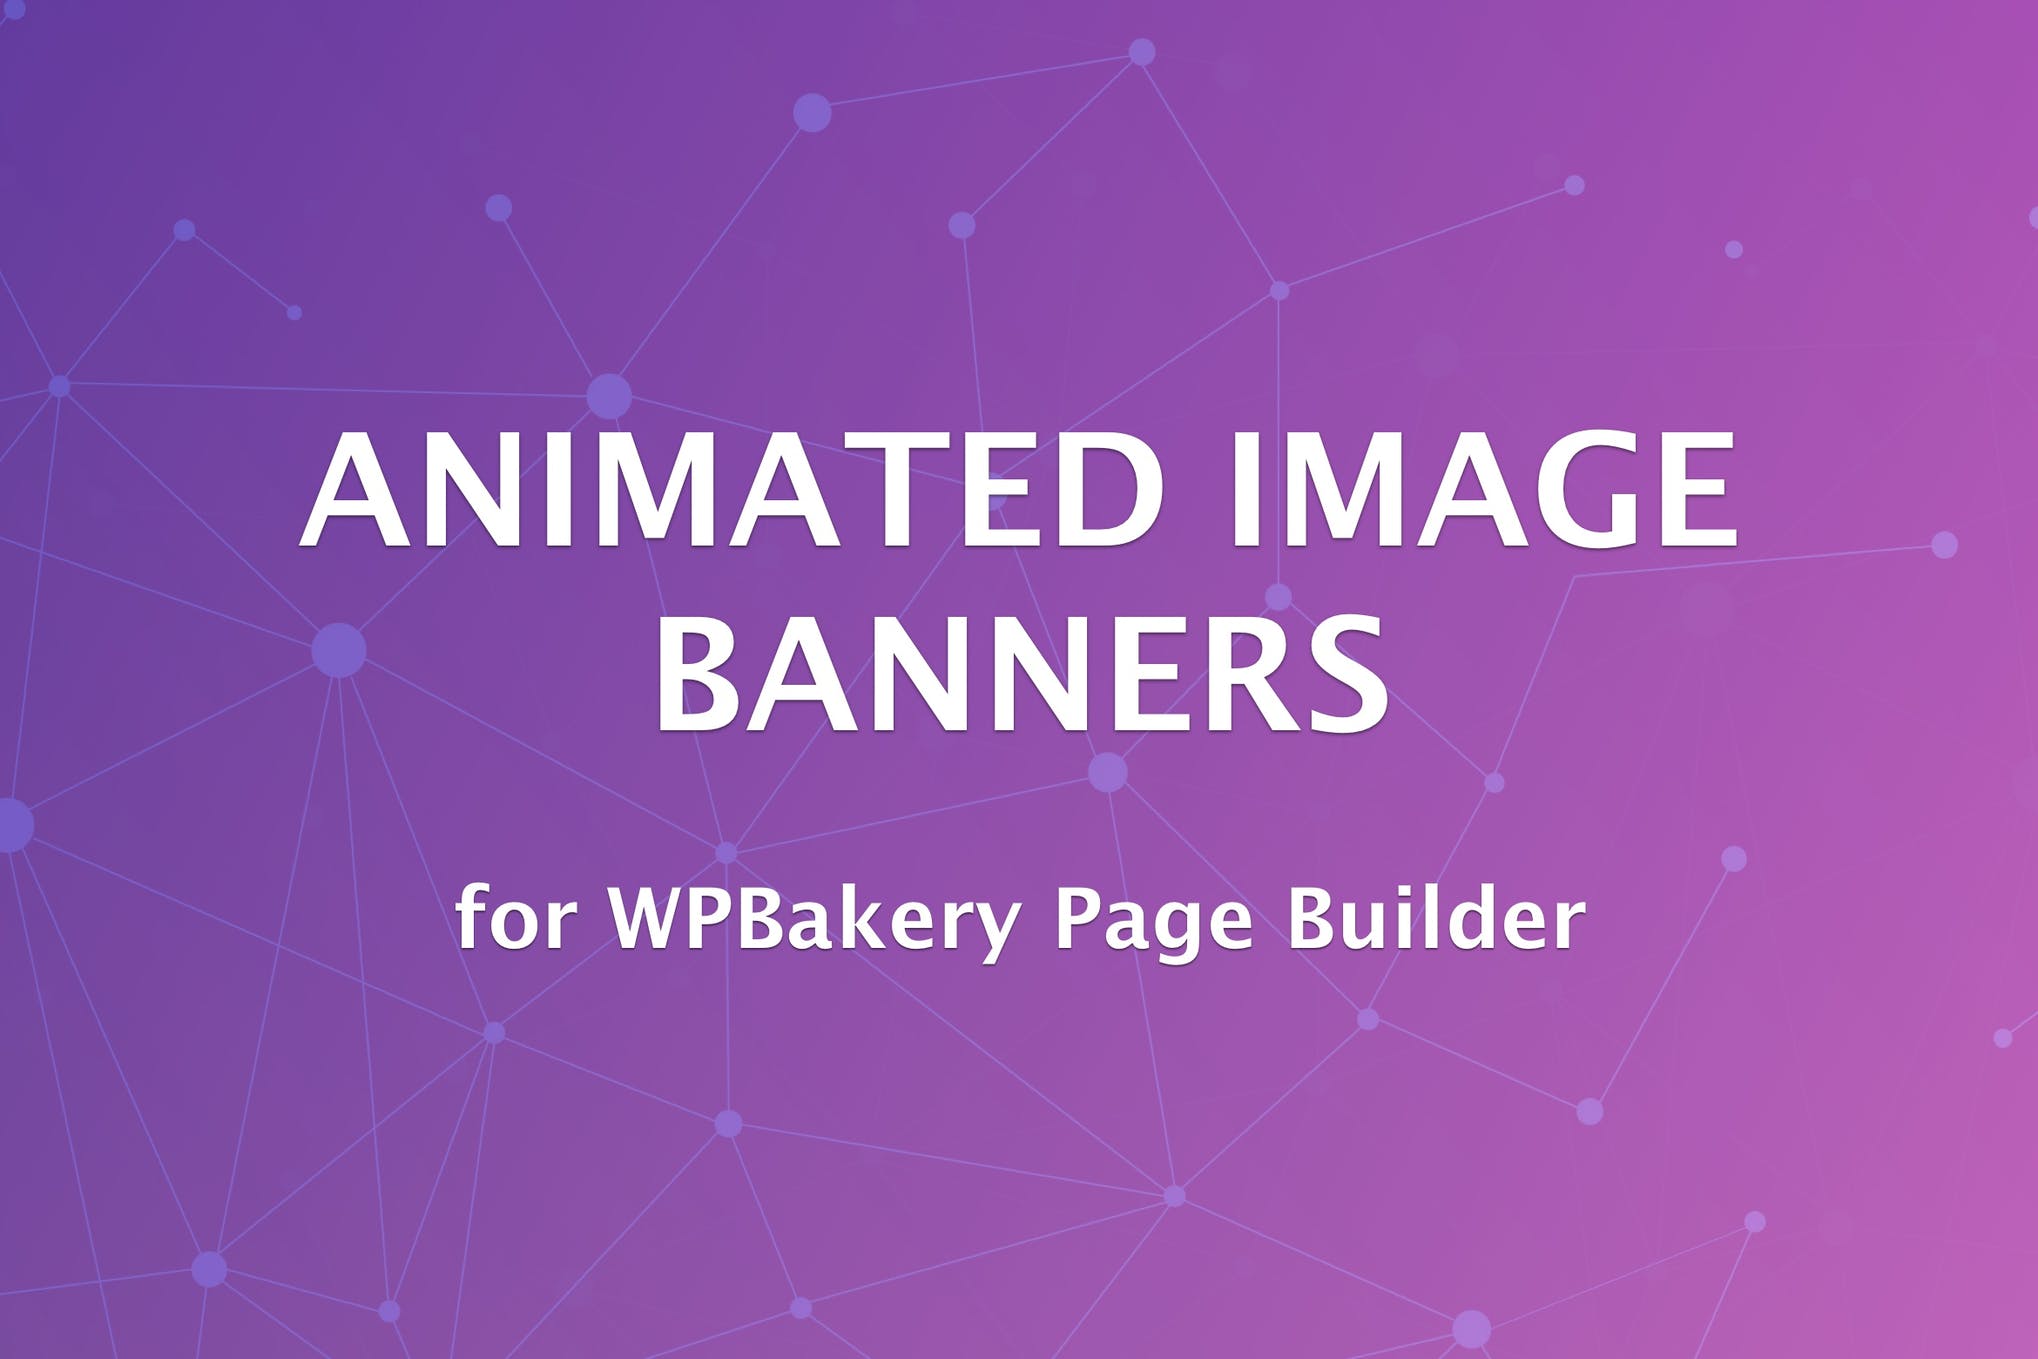 WPBakery页面生成器的动画图像横幅